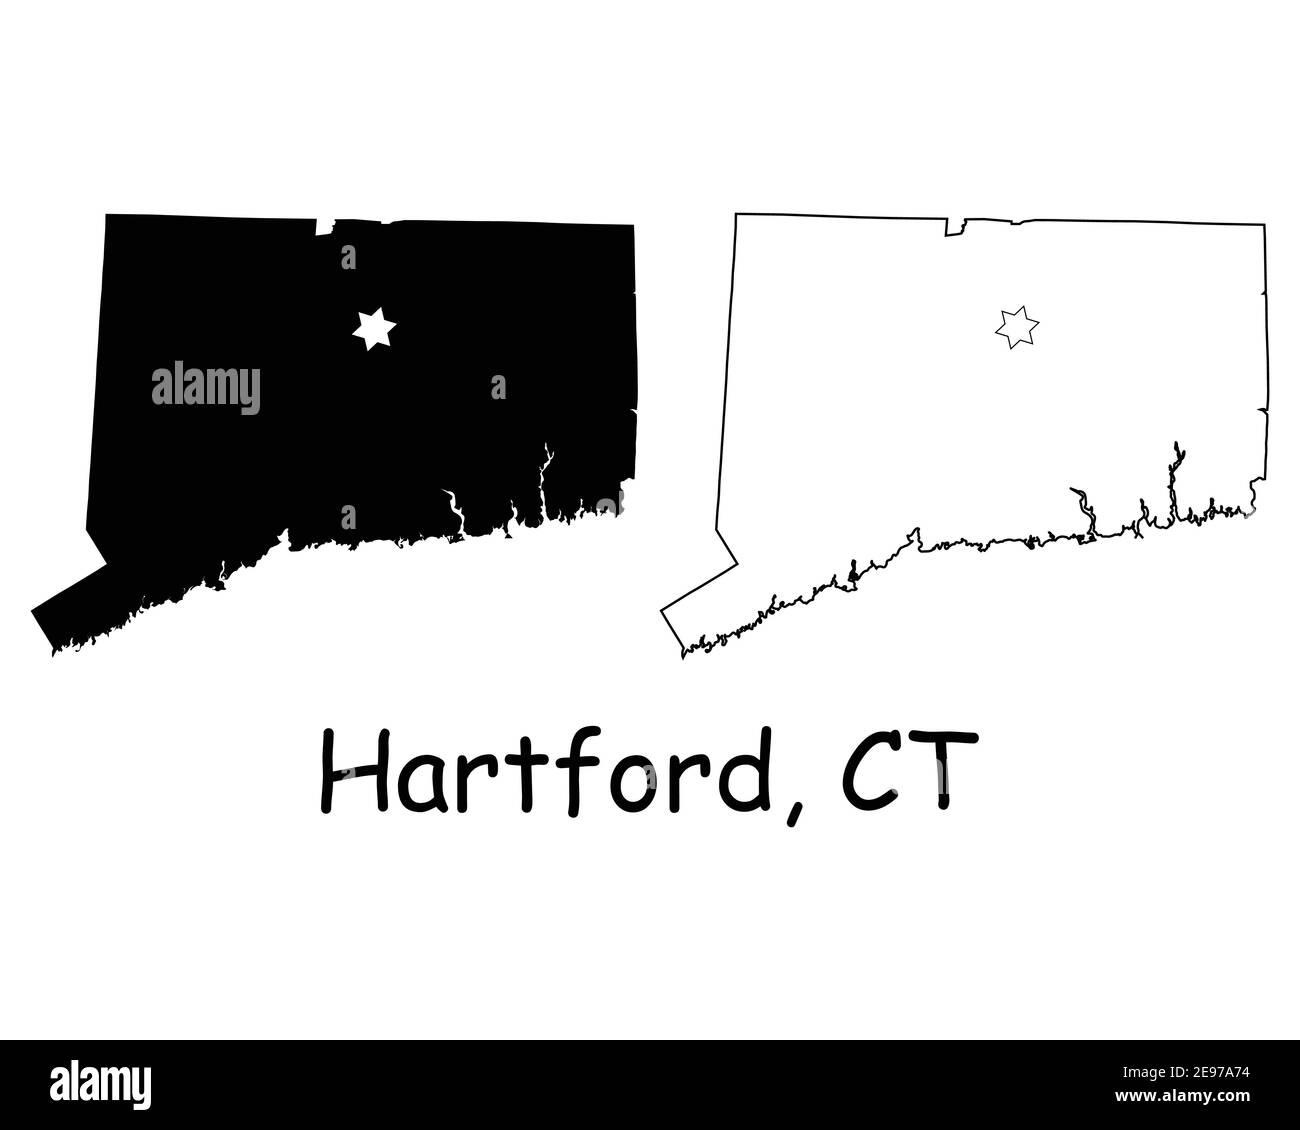 Connecticut CT State Map USA mit Capital City Star in Hartford. Schwarze Silhouette und Umrisskarten auf weißem Hintergrund isoliert. EPS-Vektor Stock Vektor